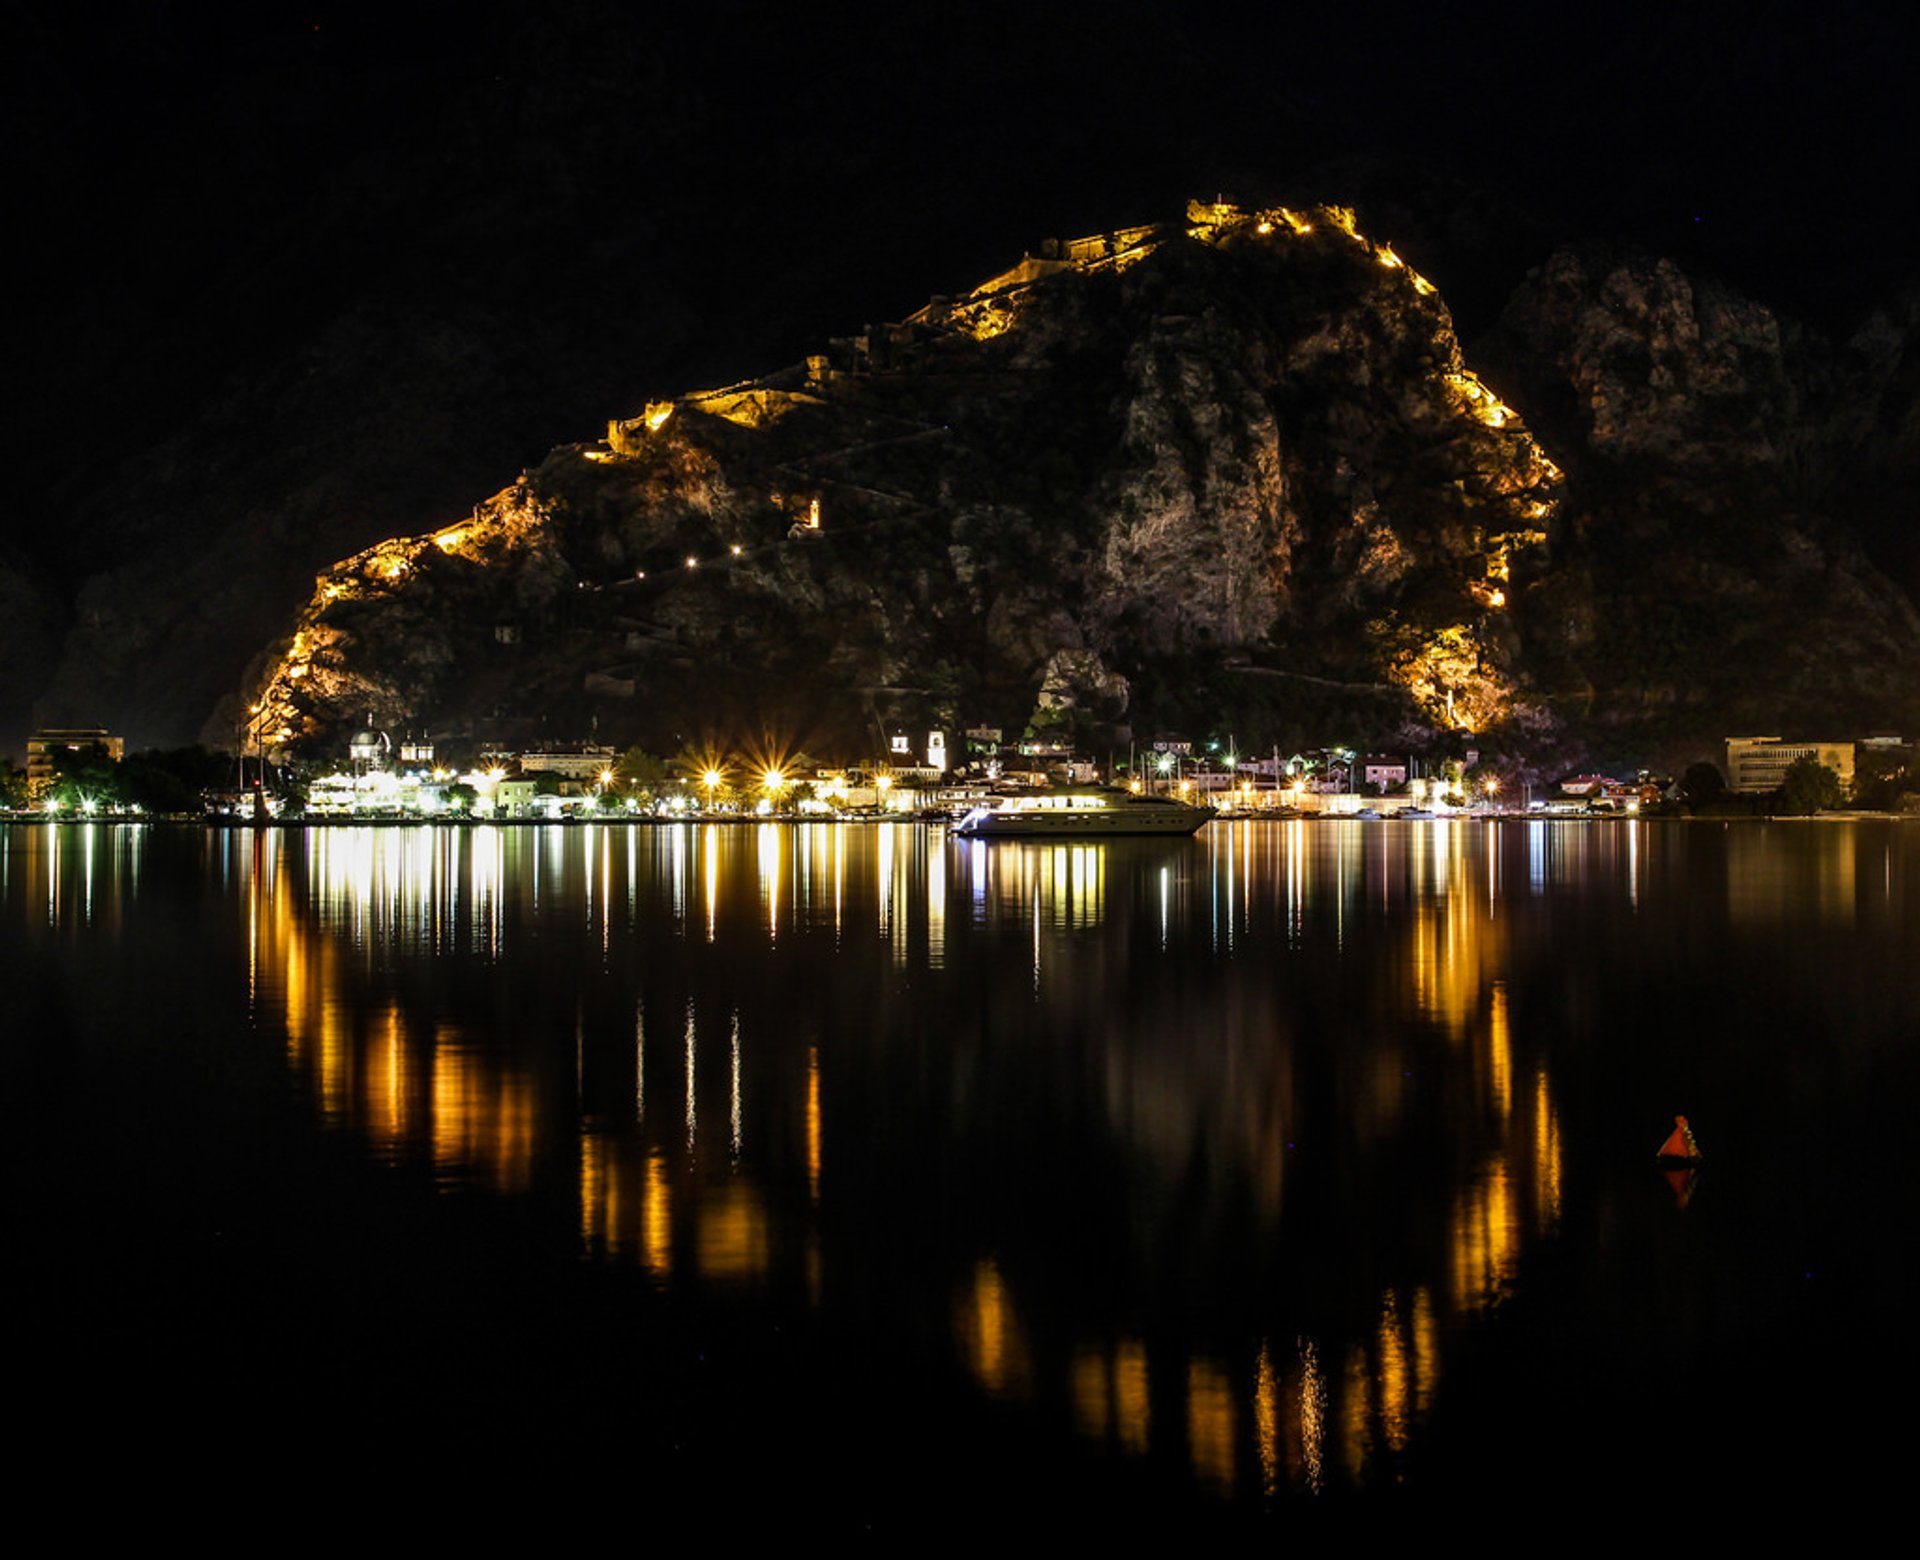 Bokeljska Noc or Boka Night in Kotor